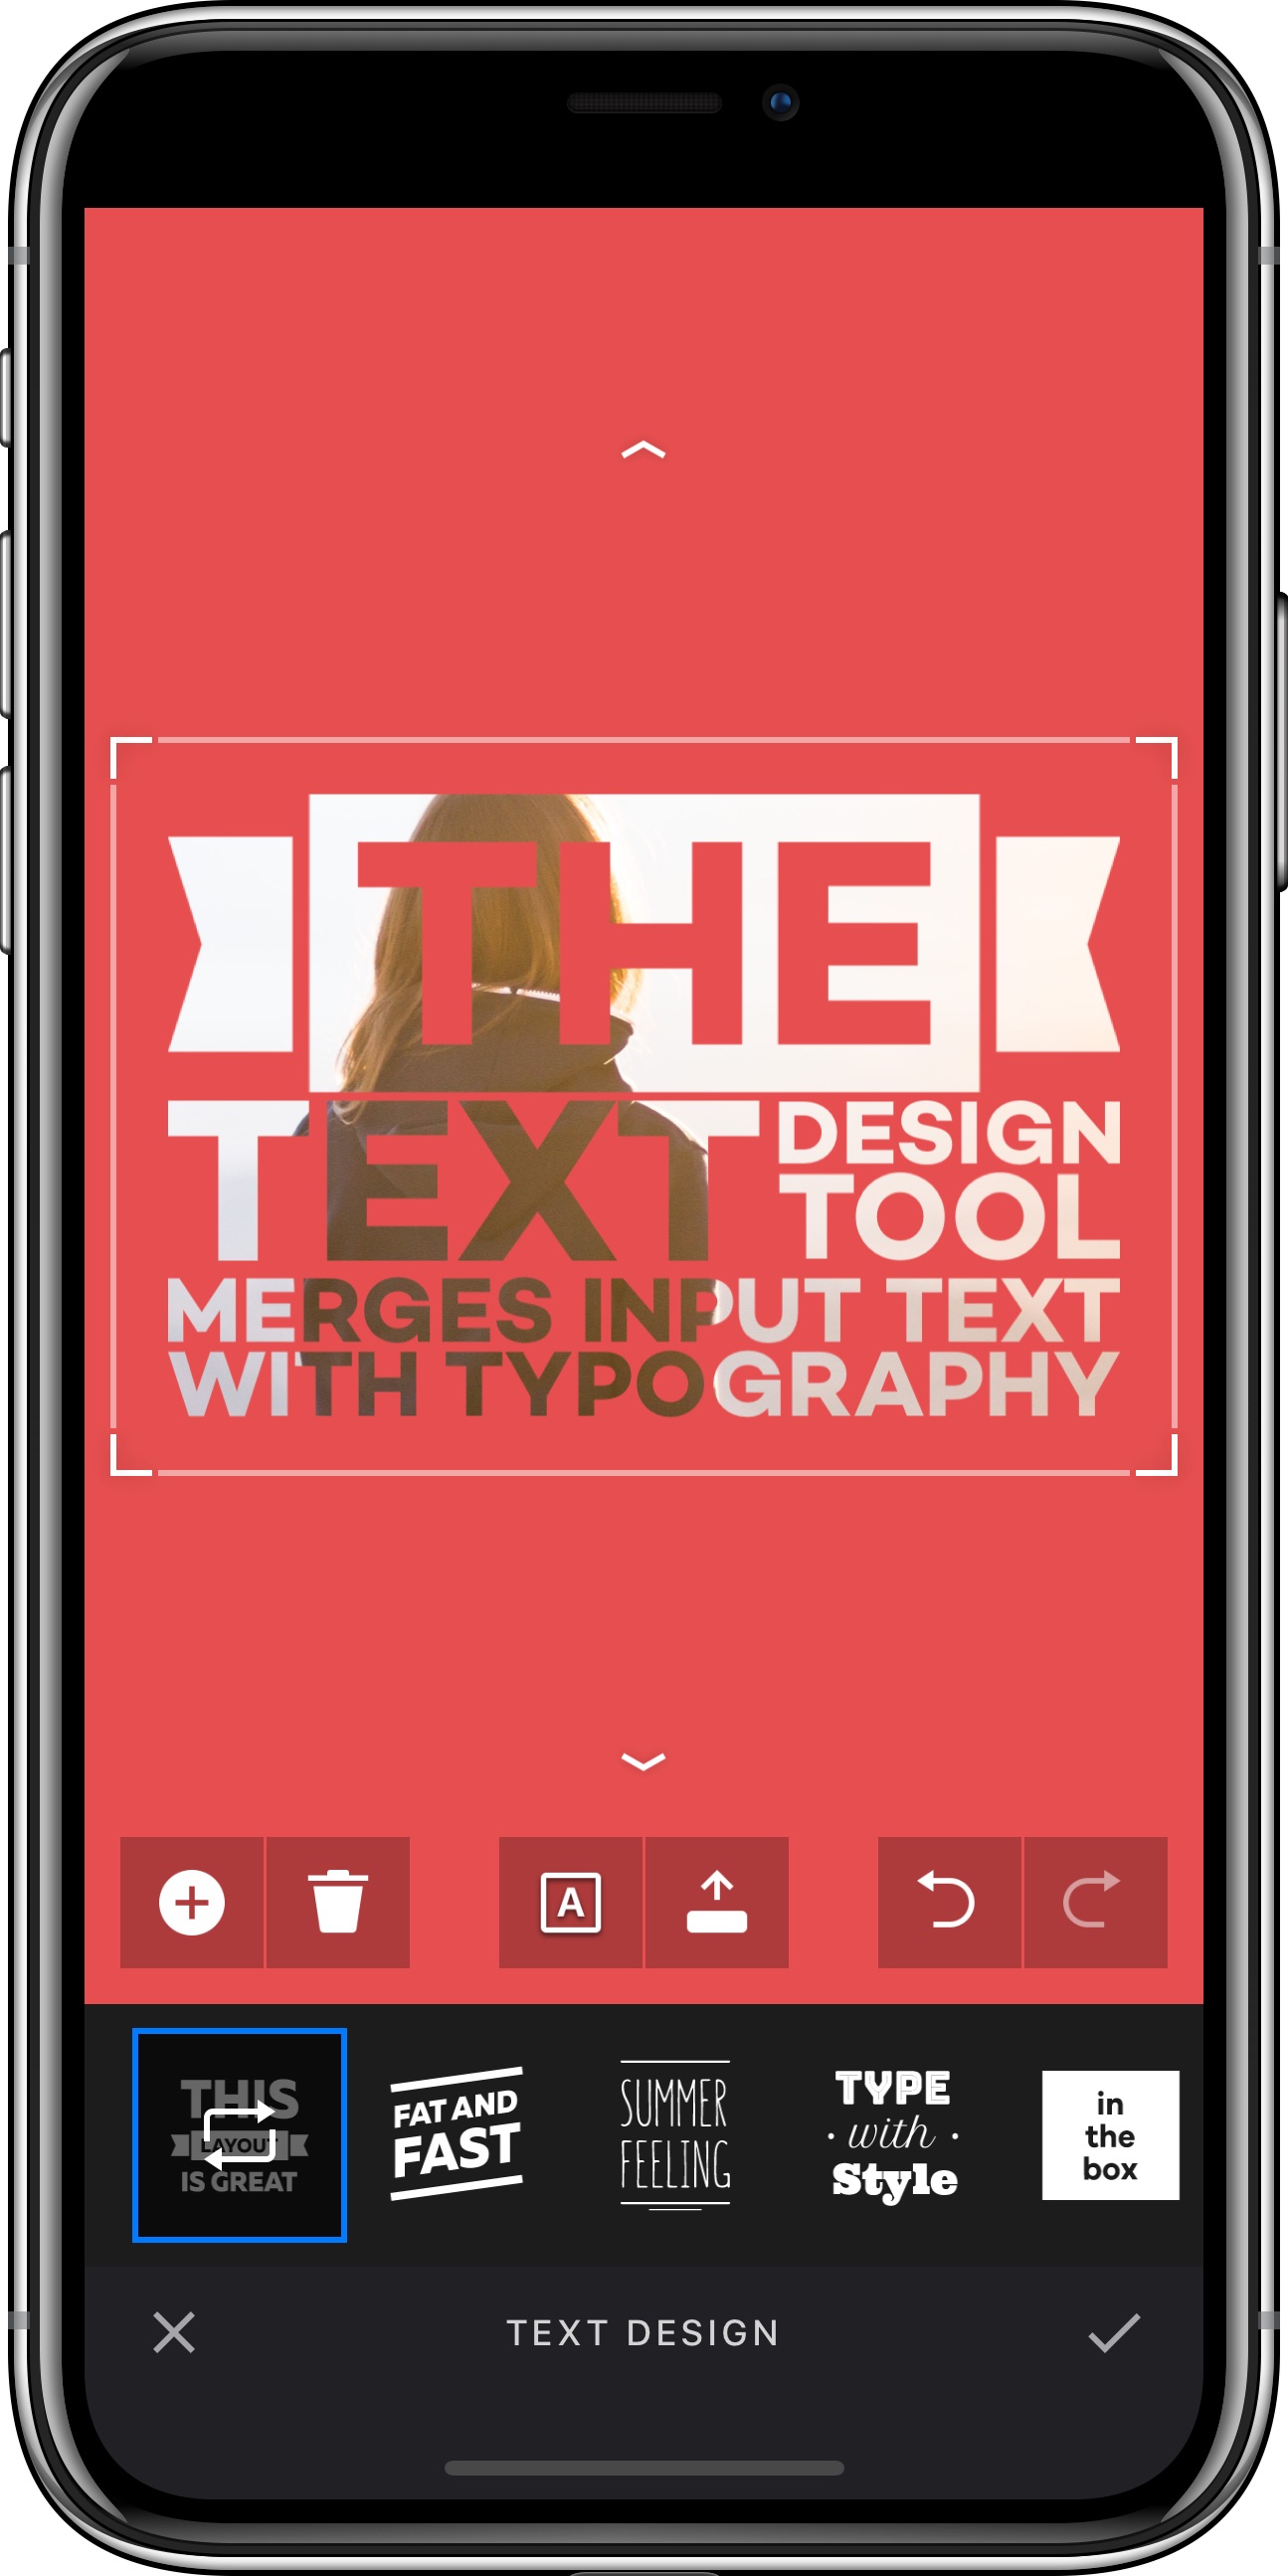 Text Design tool